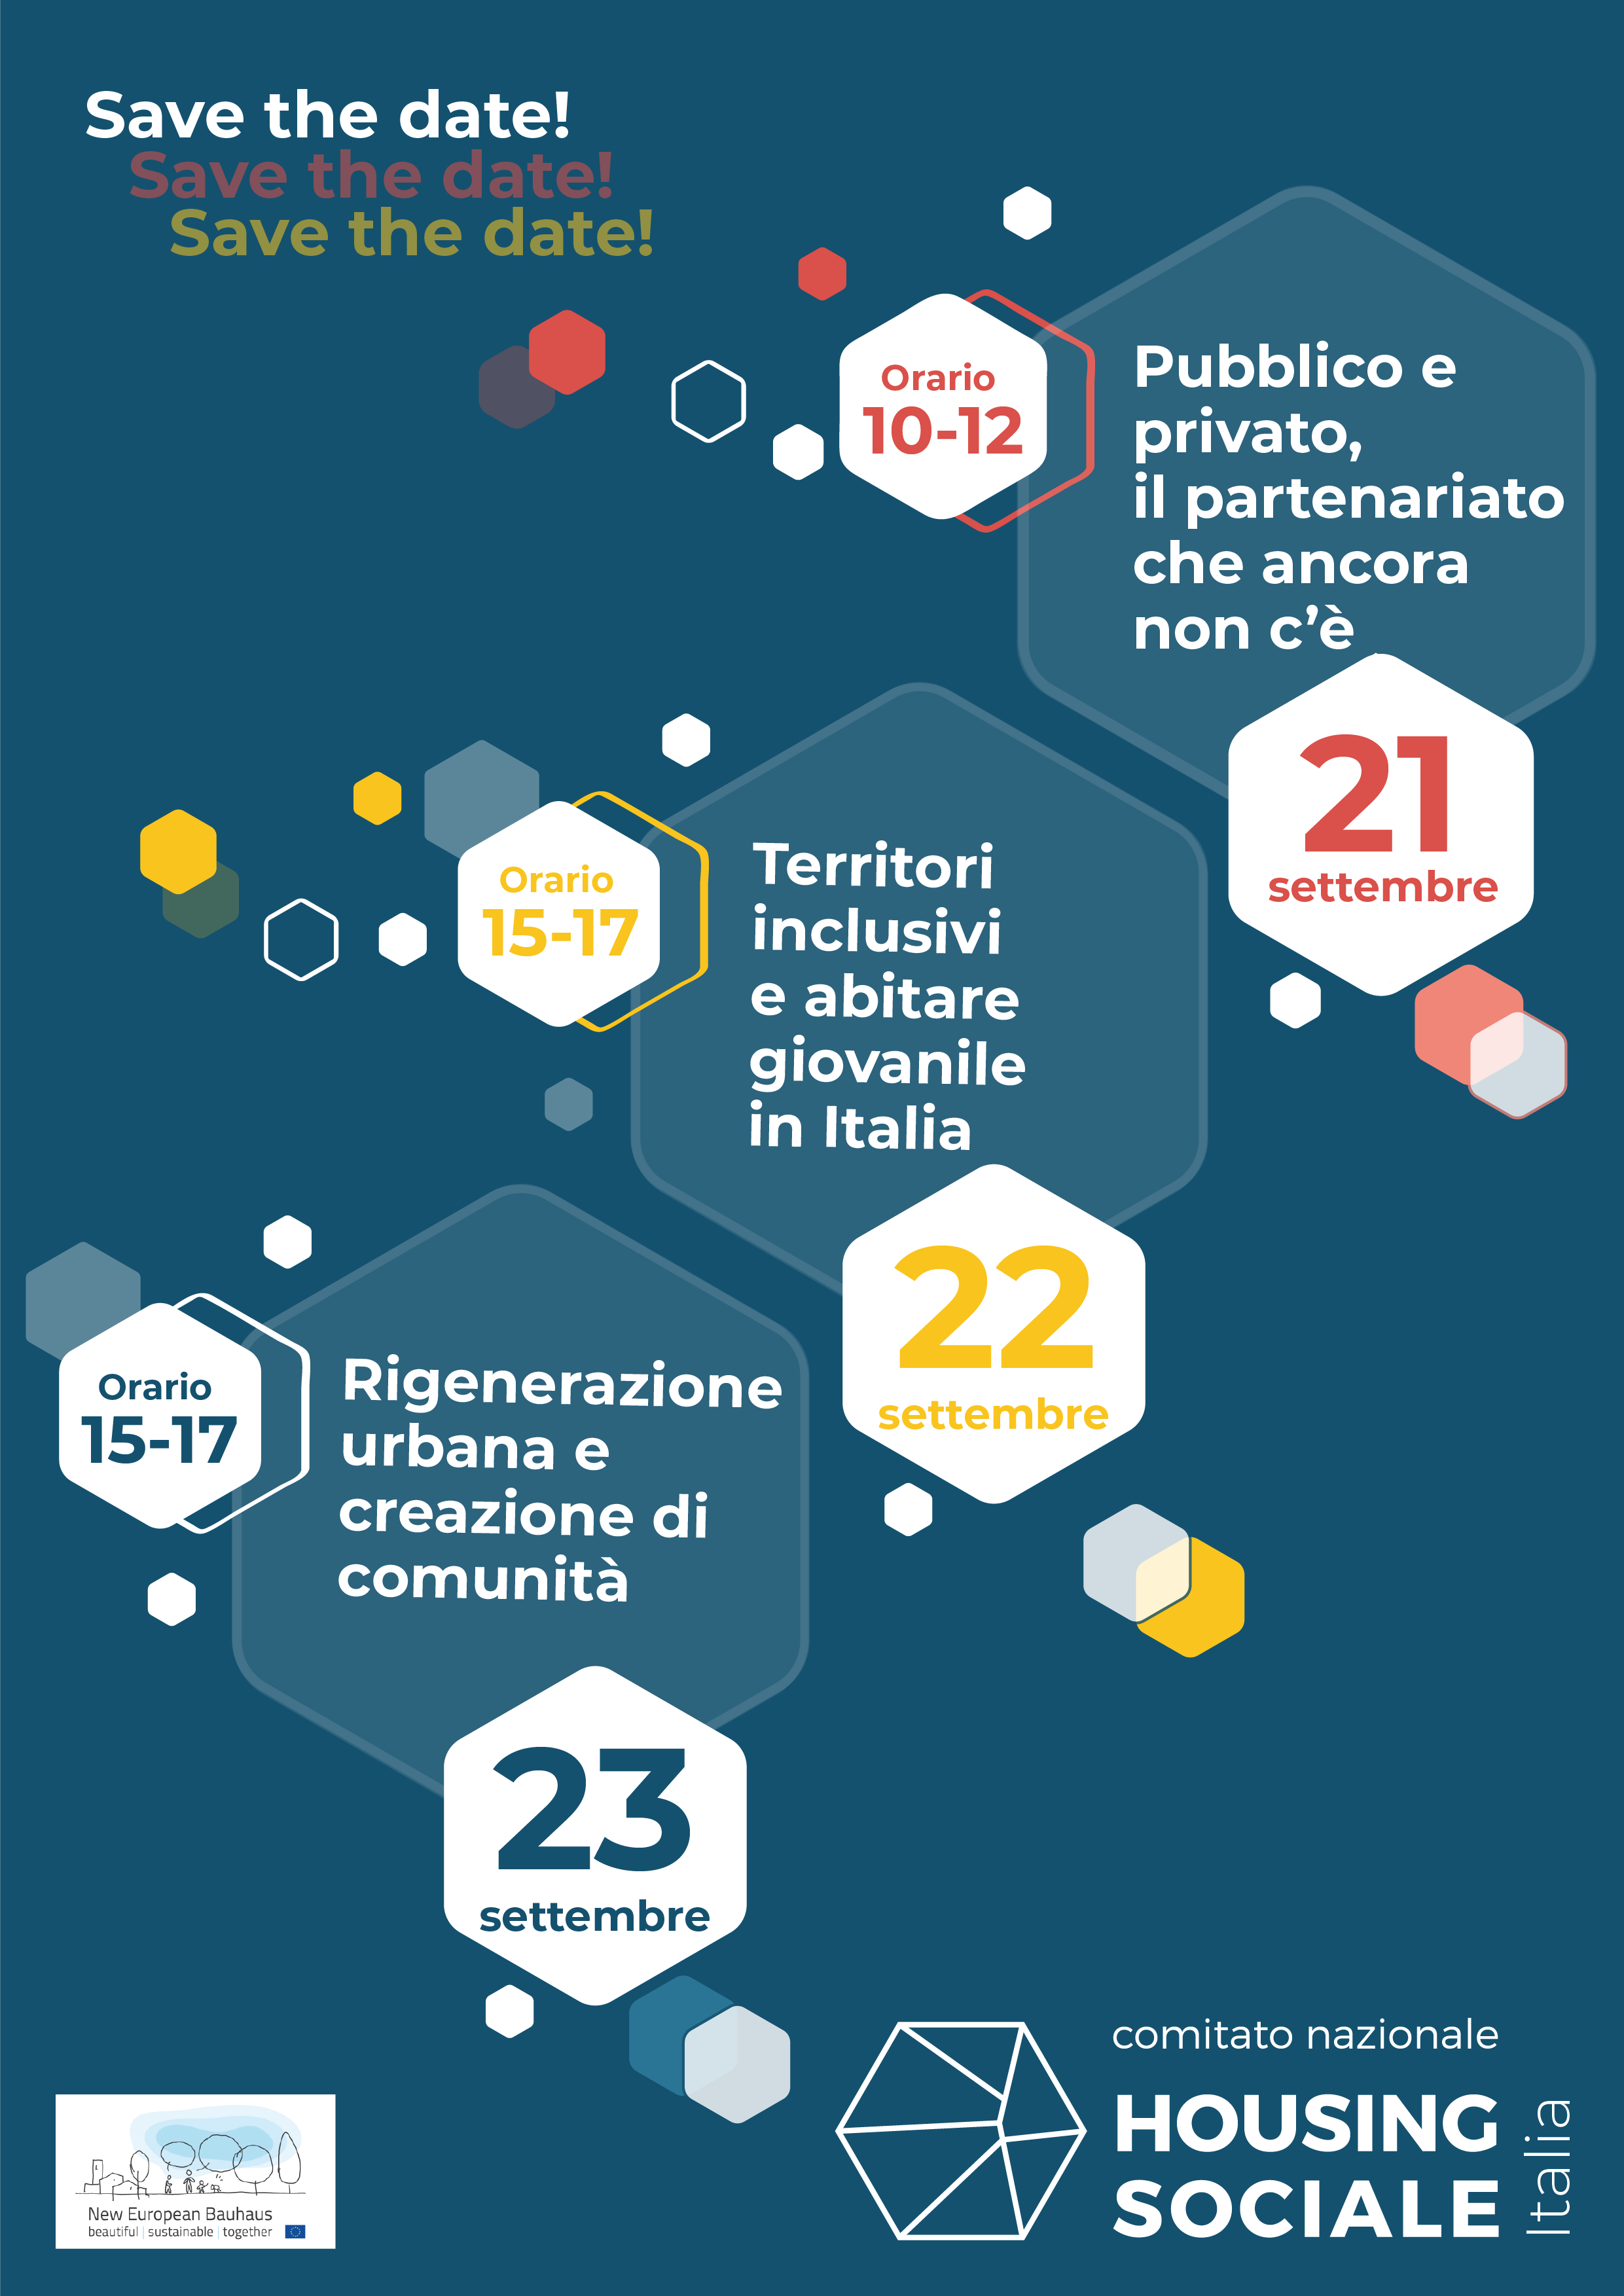 Partenariati diffusi e servizi di comunità, quale futuro per l’abitare in Italia?